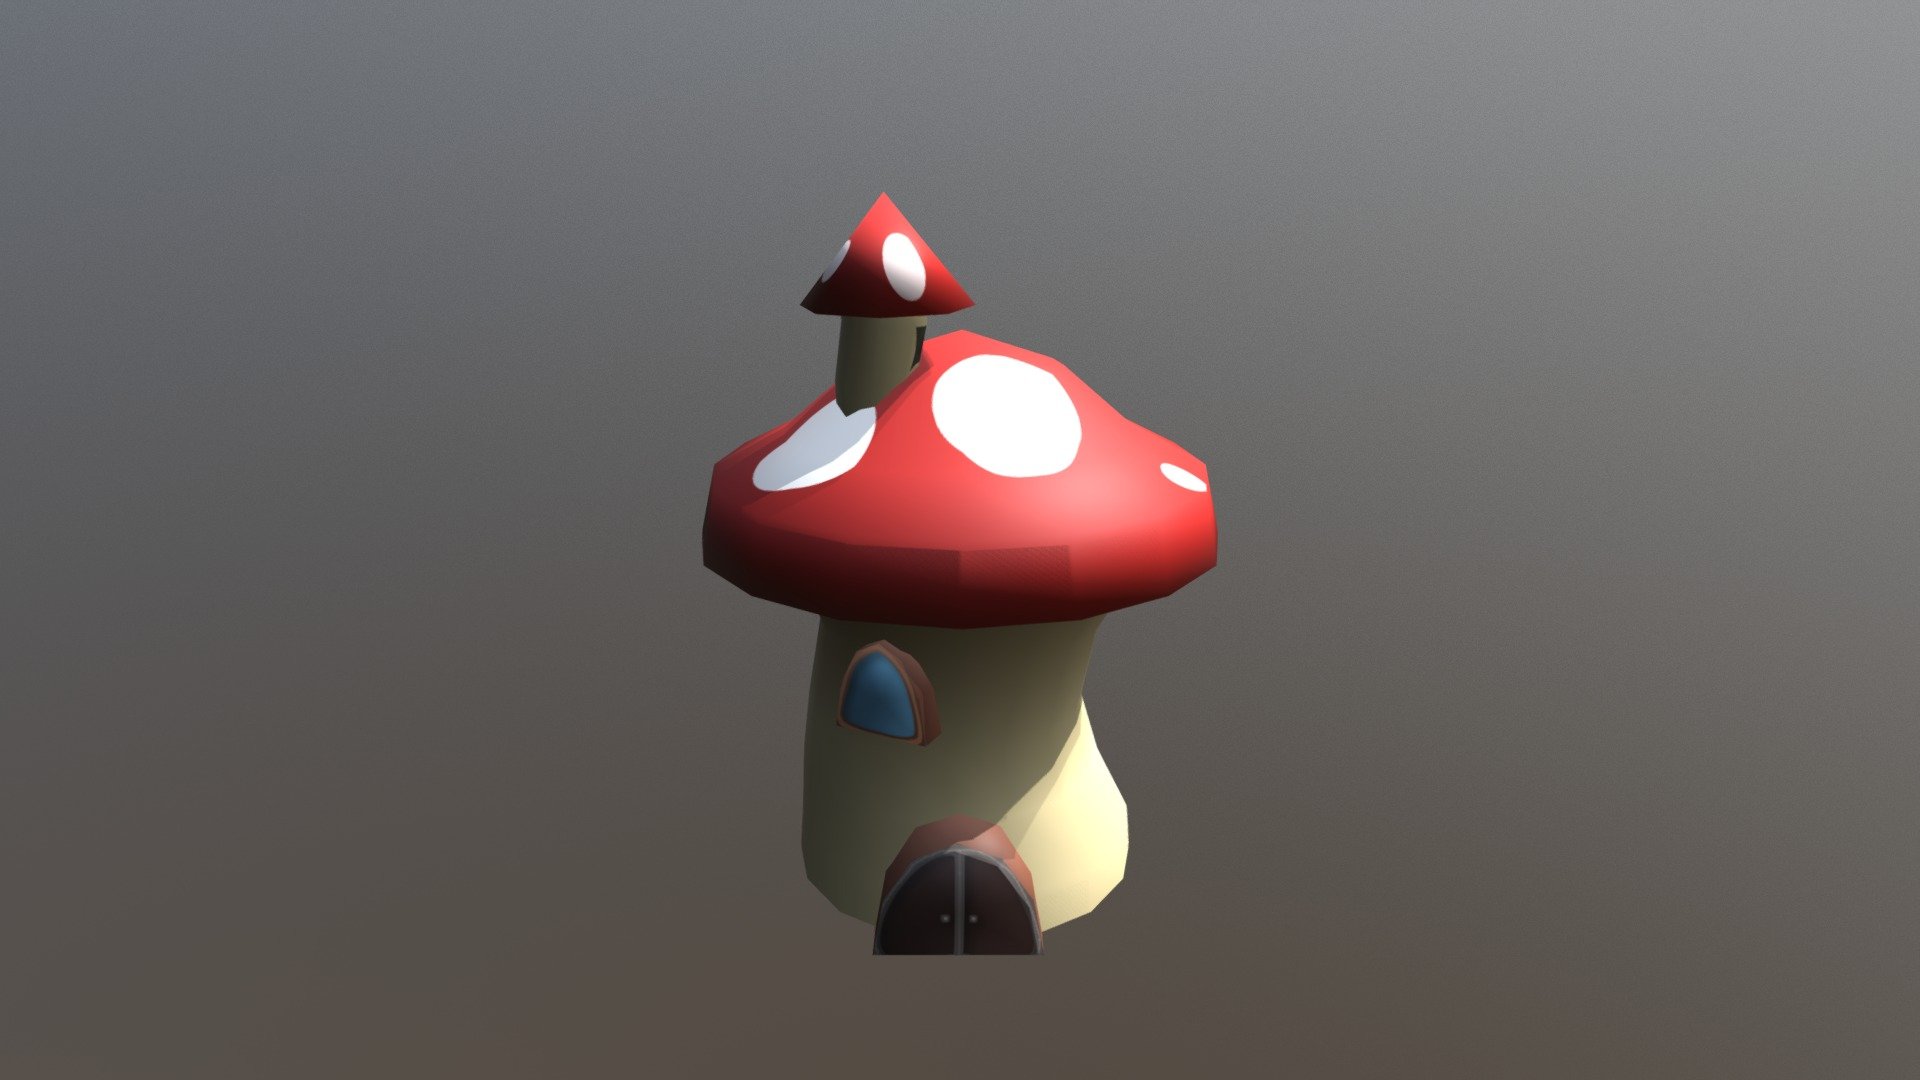 Cartoon Mushroom House, Super Mario inspired 3d model